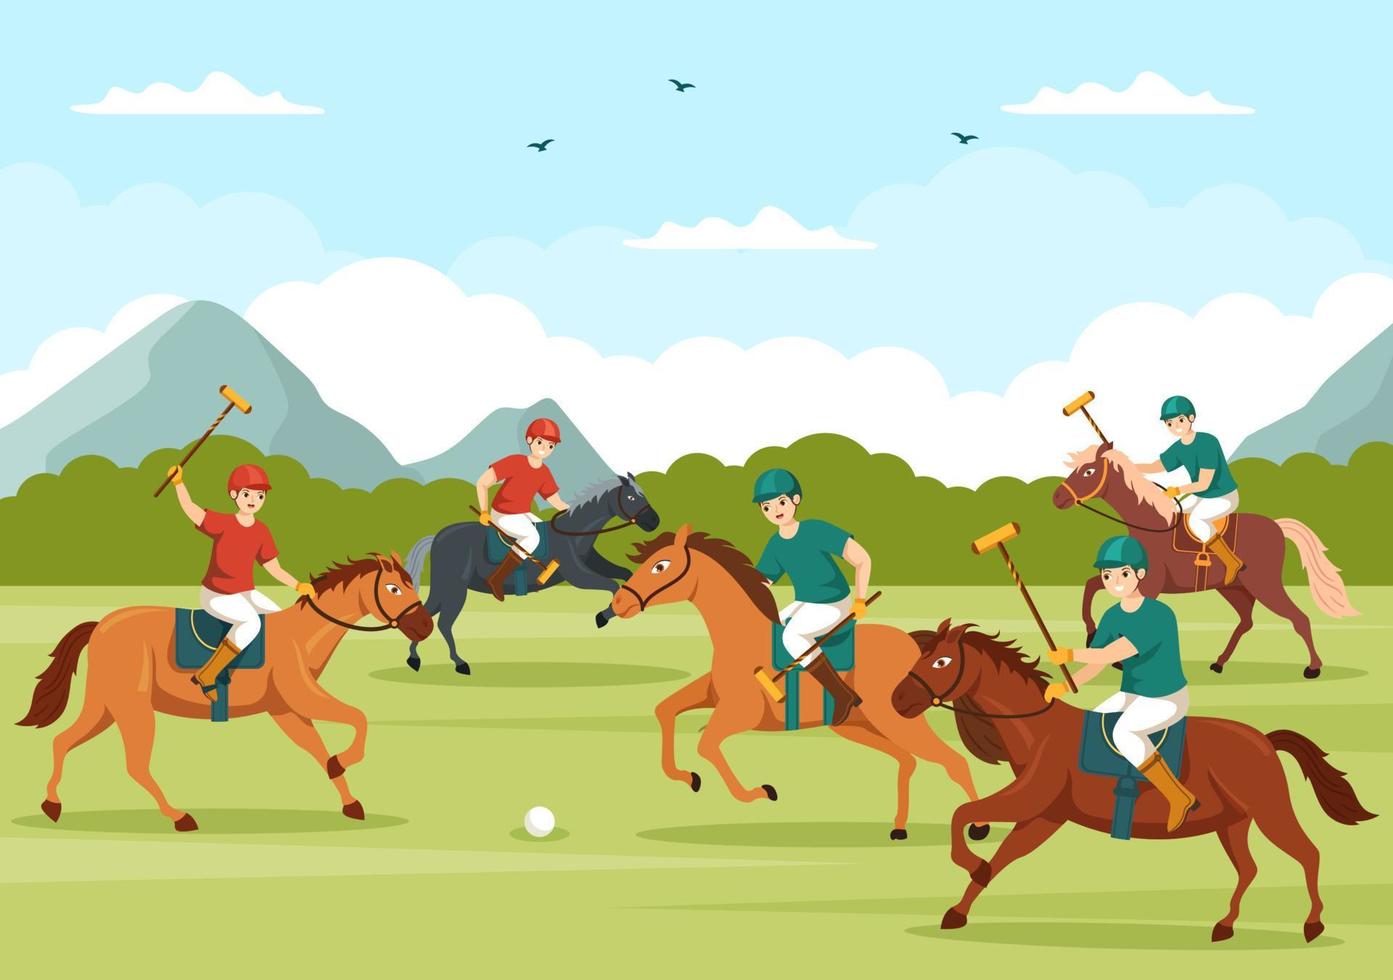 polo-pferdesport mit spieler, der pferd reitet und stick-gebrauchsausrüstung hält, die in flache gezeichnete schablonenillustration des cartoon-plakats hand gesetzt wird vektor